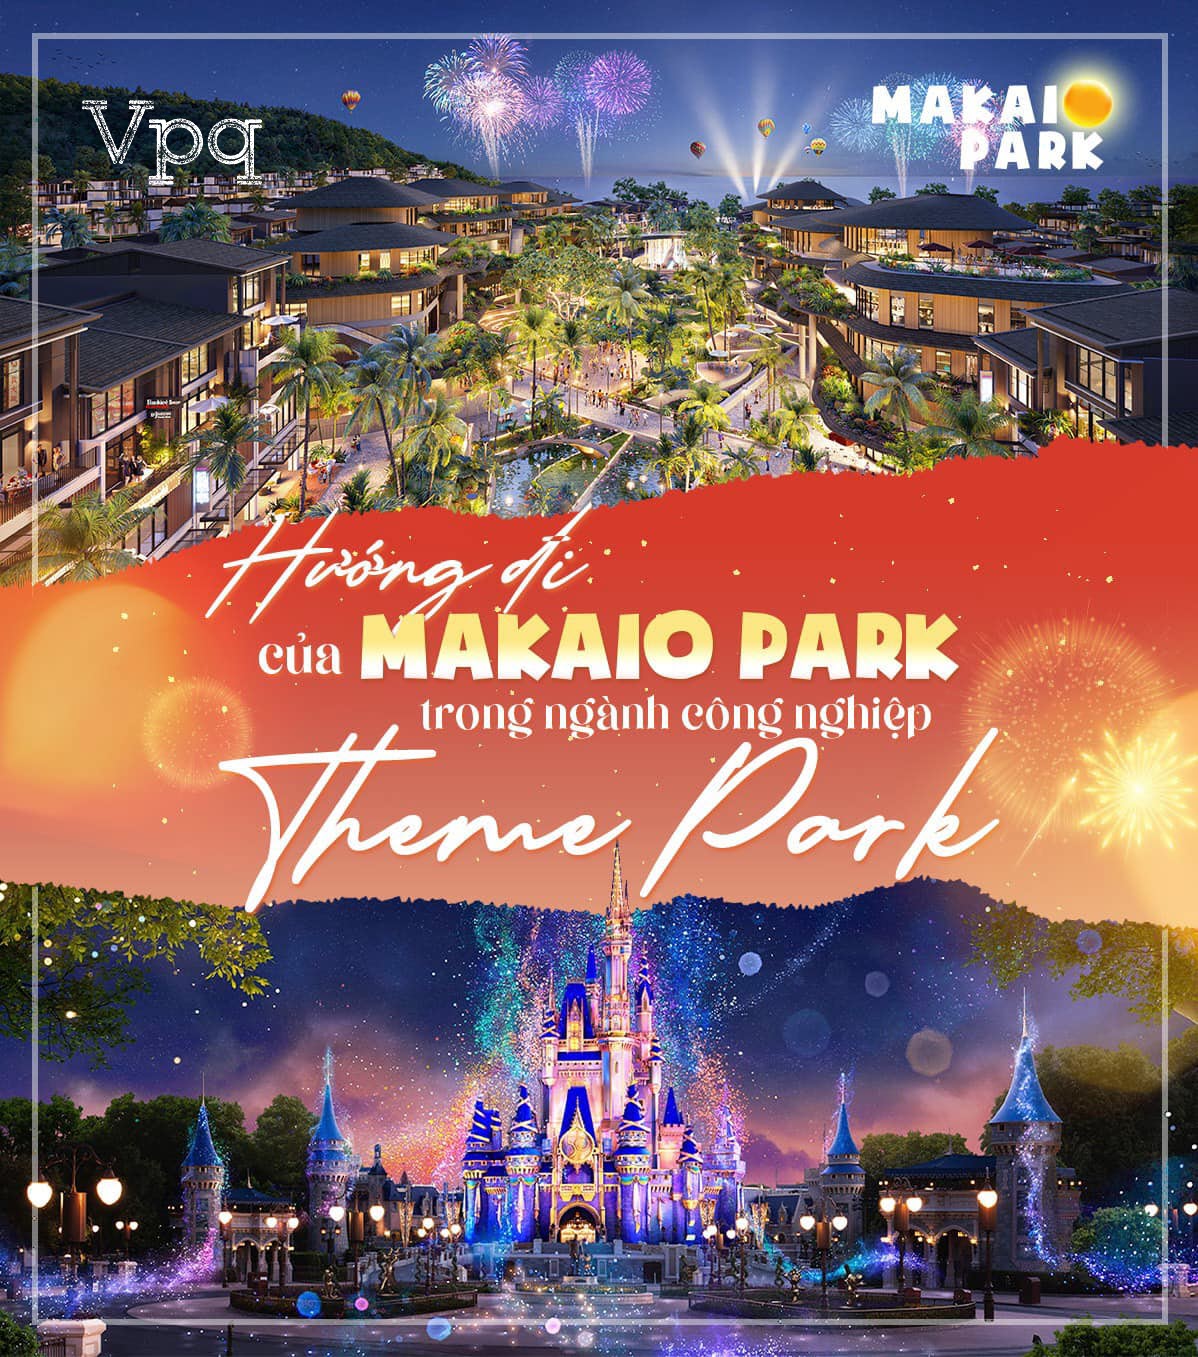 Hương đi của Makaio Park